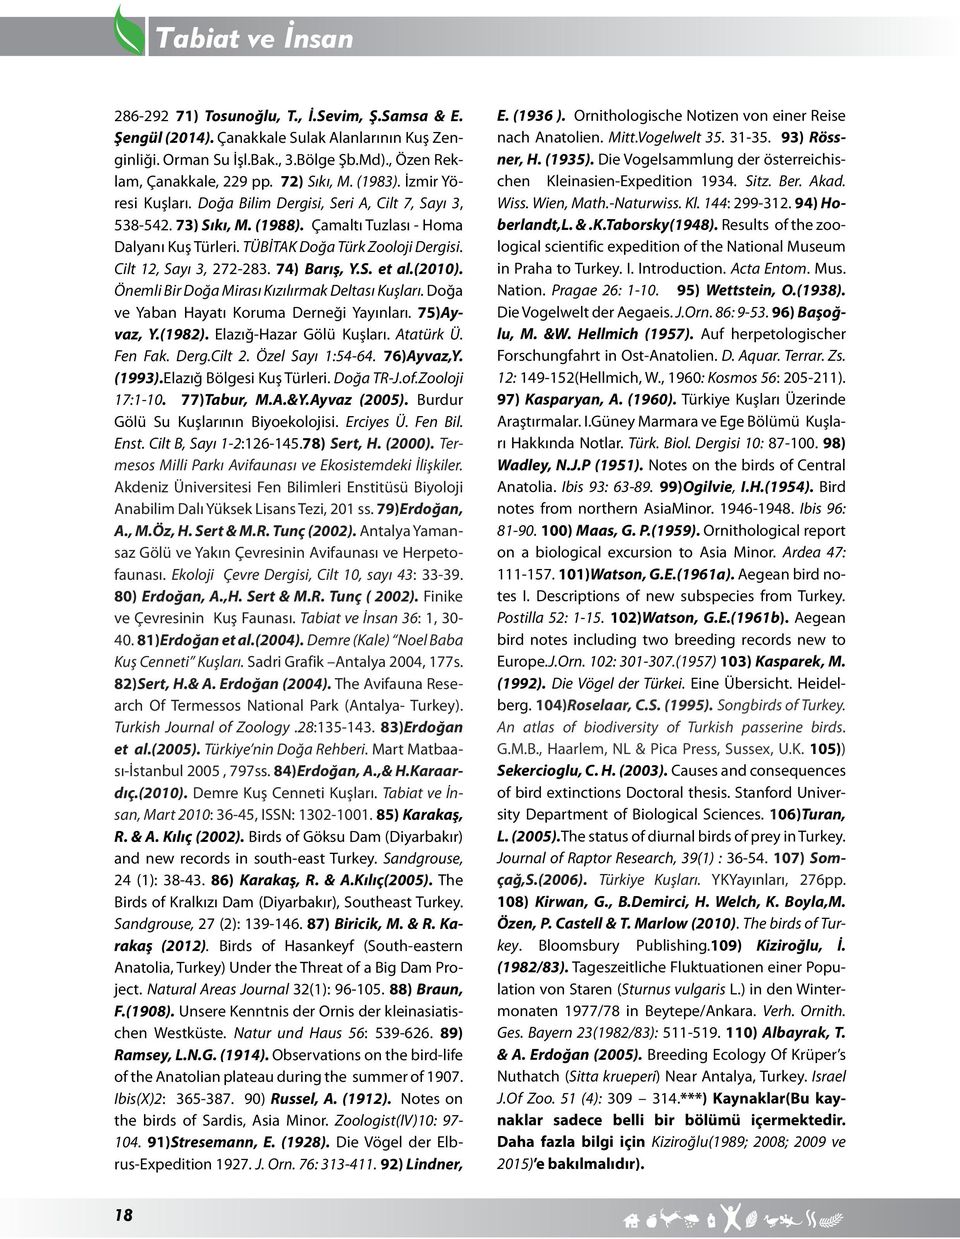 74) Barış, Y.S. et al.(2010). Önemli Bir Doğa Mirası Kızılırmak Deltası Kuşları. Doğa ve Yaban Hayatı Koruma Derneği Yayınları. 75)Ayvaz, Y.(1982). Elazığ-Hazar Gölü Kuşları. Atatürk Ü. Fen Fak. Derg.